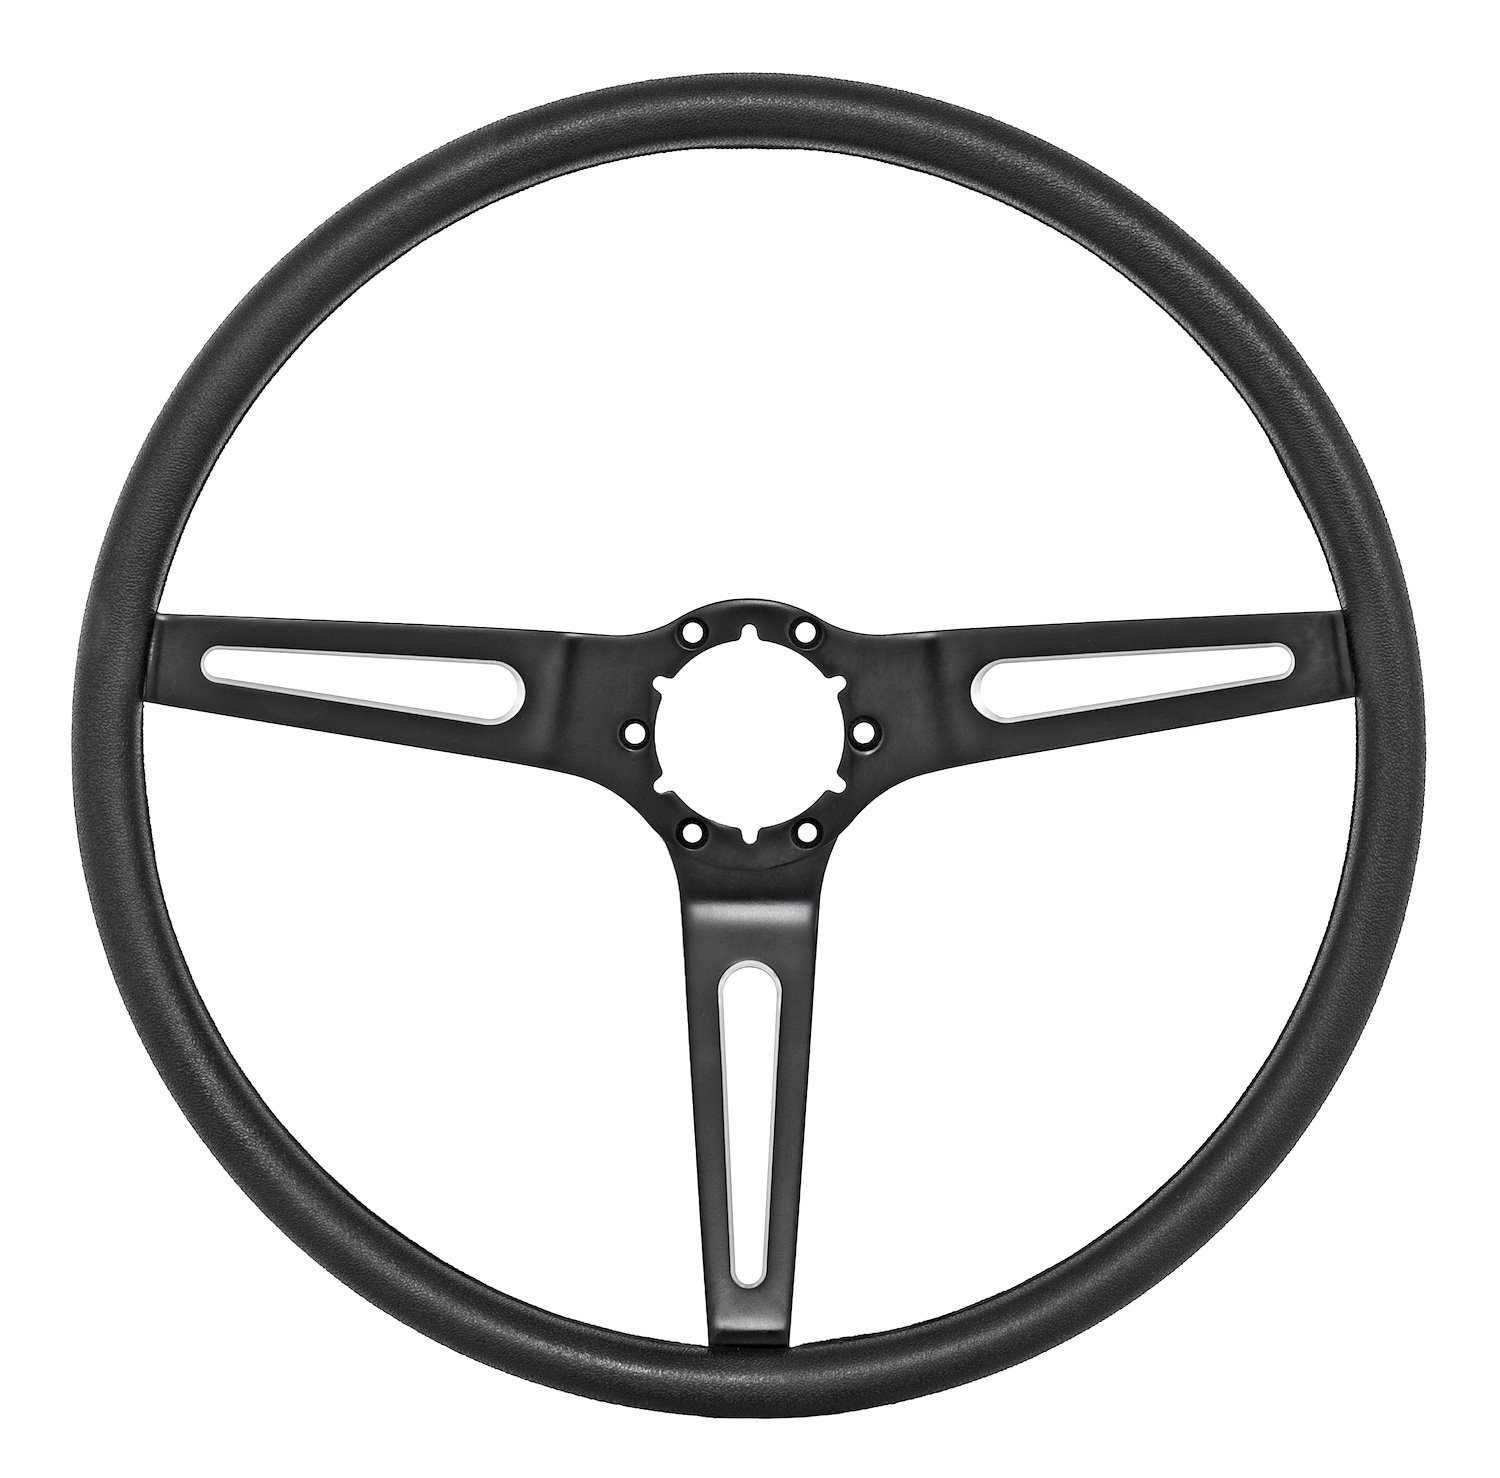 3-Spoke Comfort Grip Steering Wheel w/Stainless Steel Outer Ring for 1969-1972 GM Cars & 1960-1975 GM Trucks [Black Spokes]